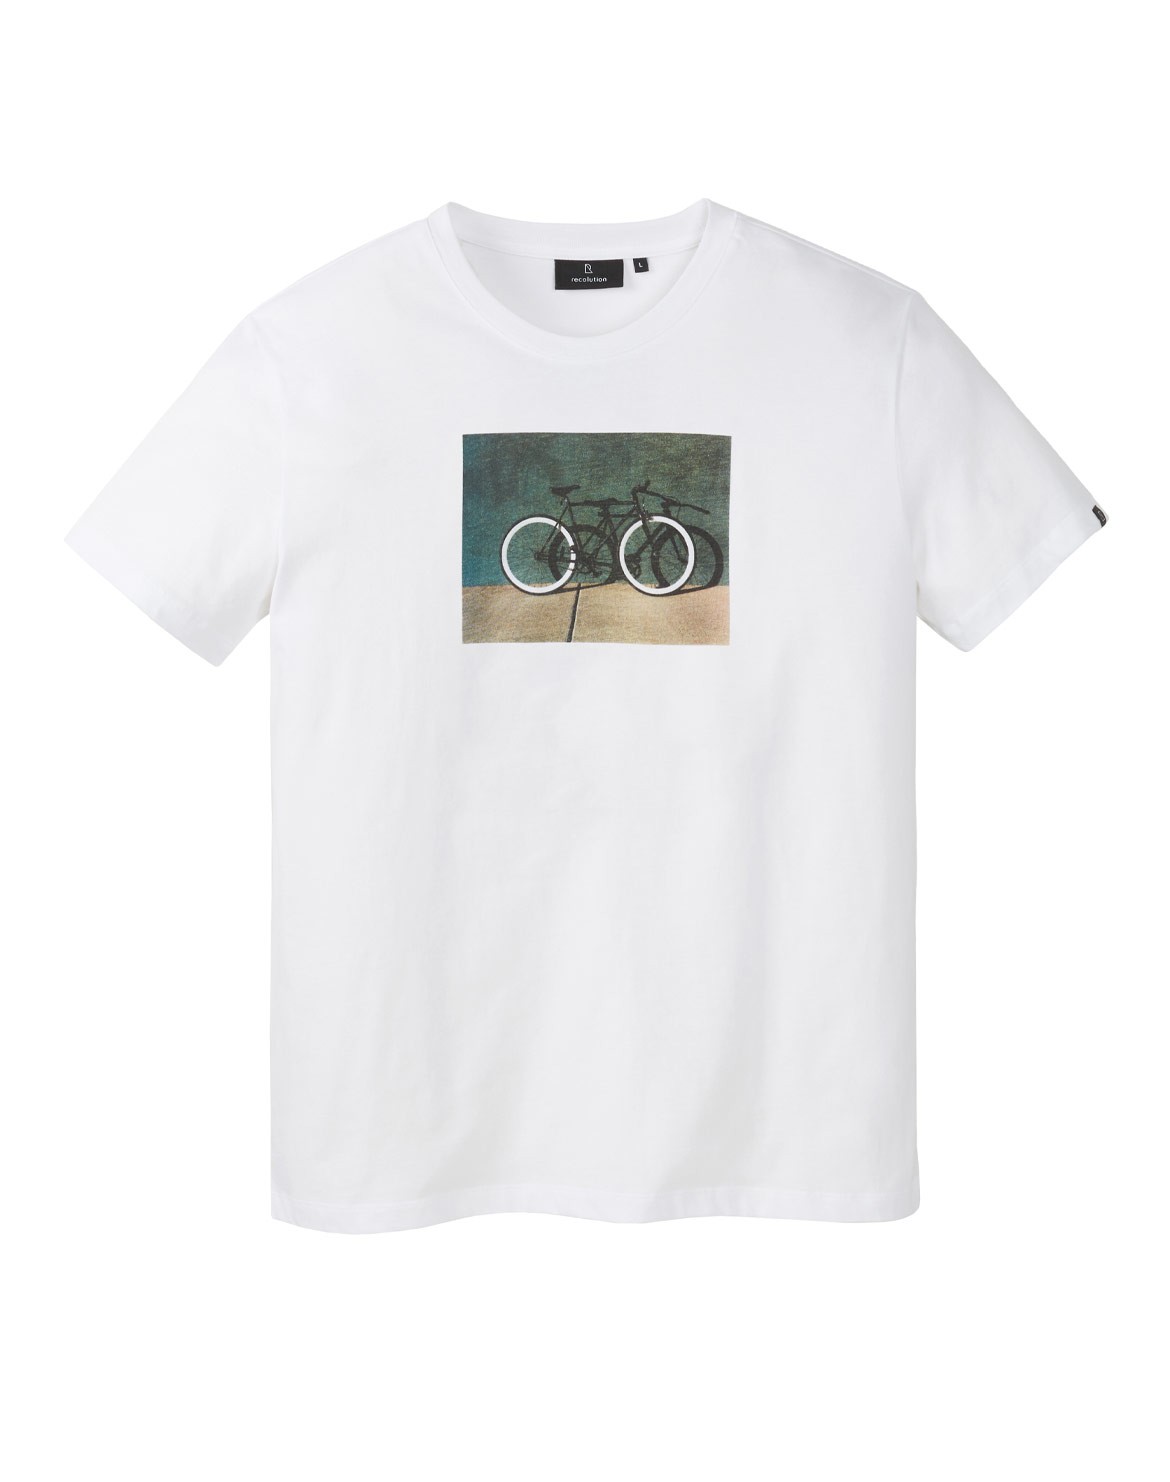 Agave Bike Wall T-Shirt